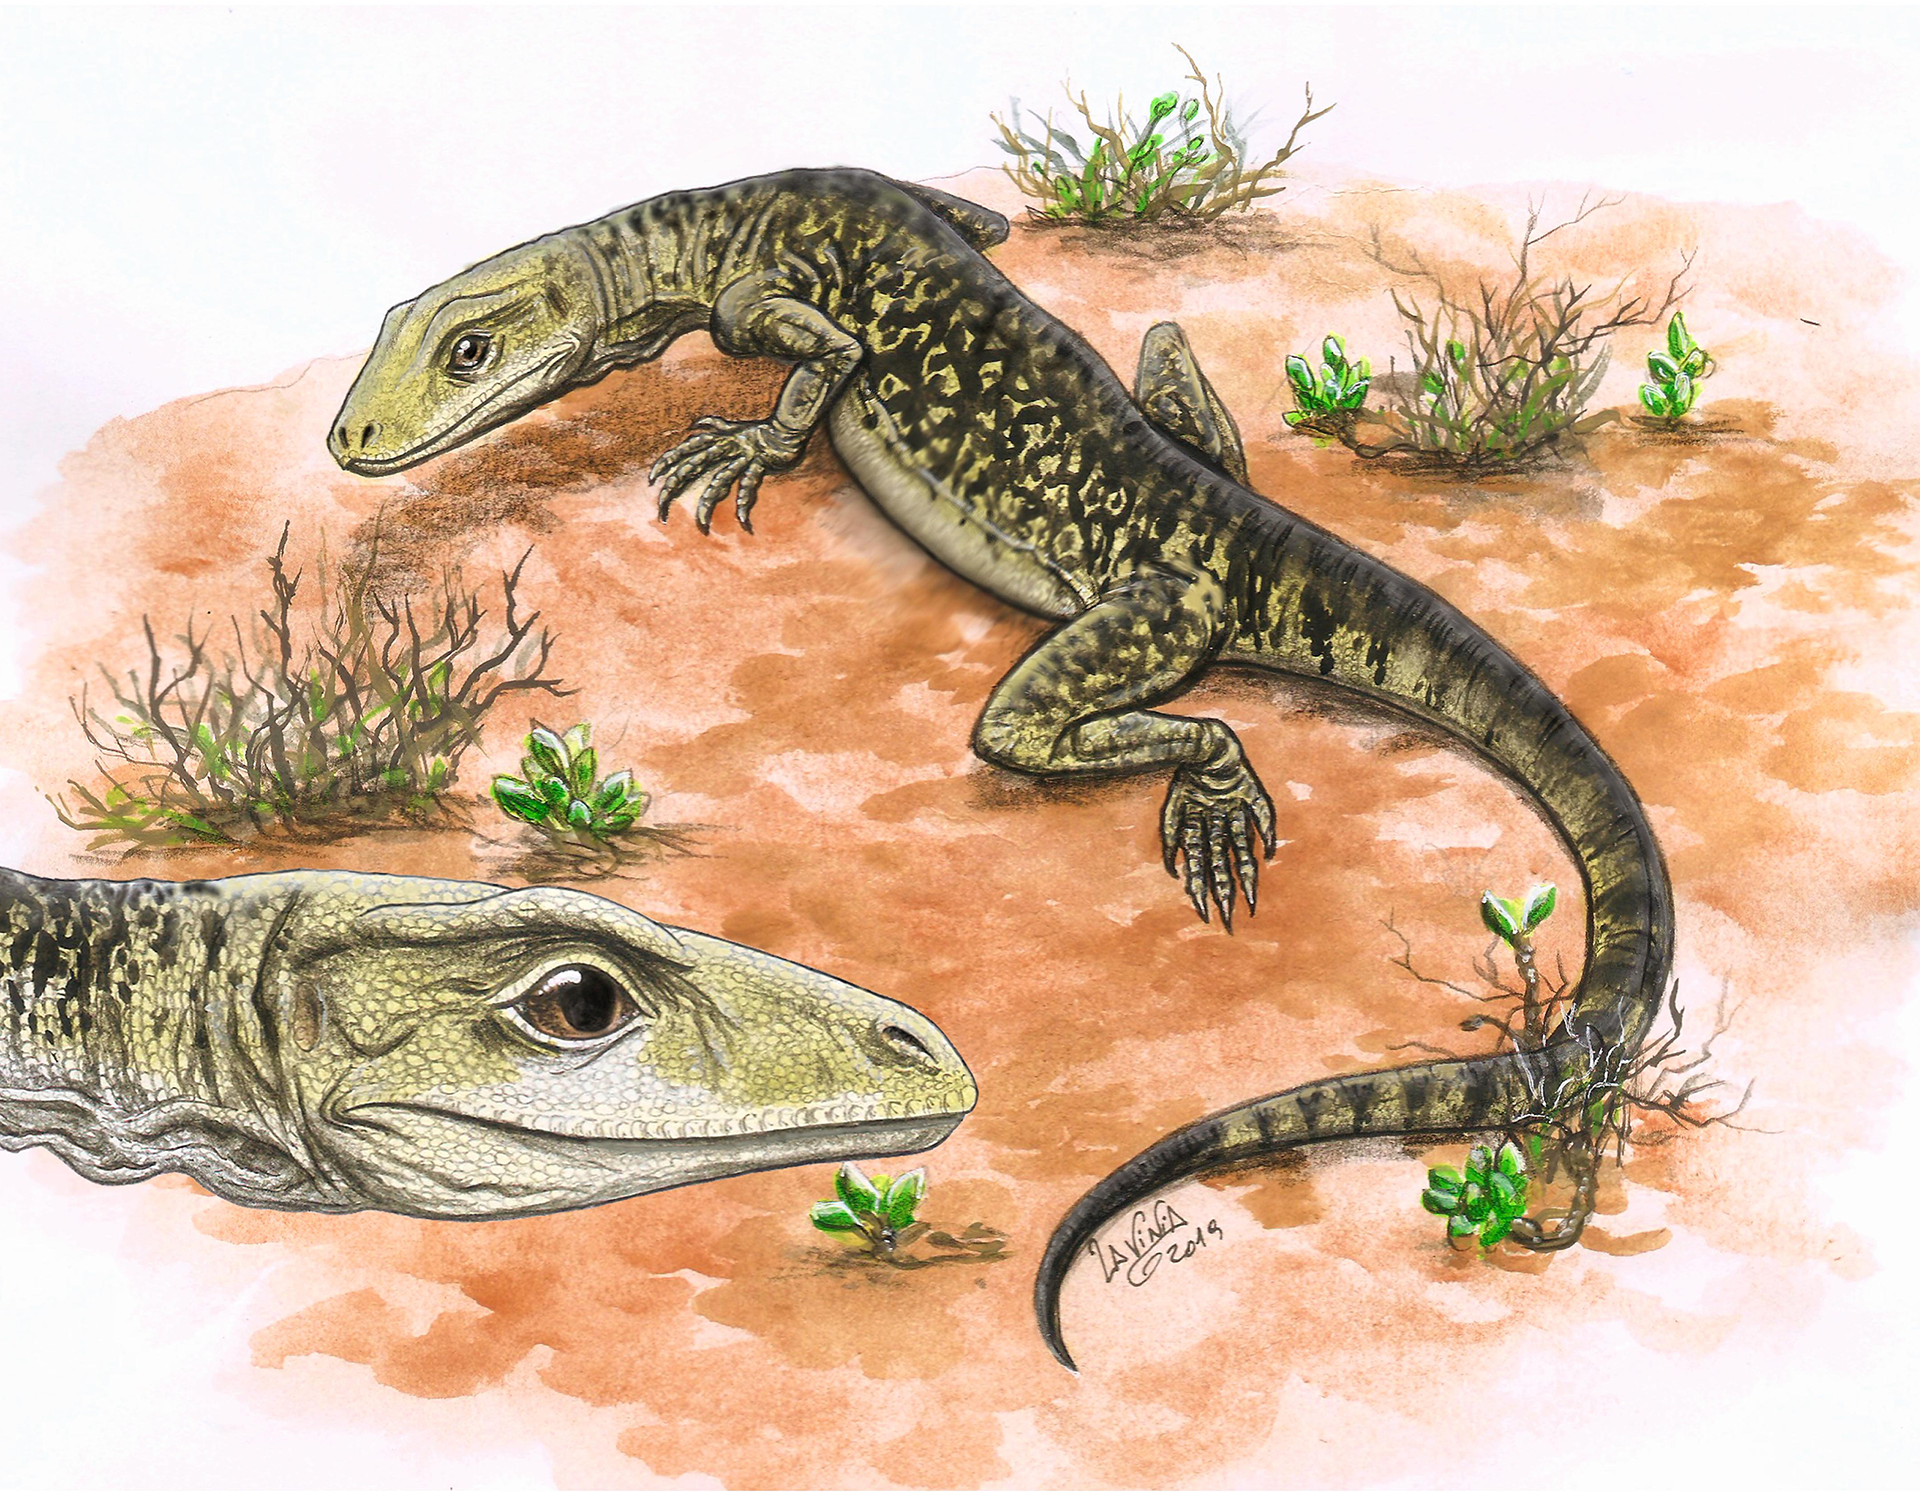 Estudiaron un fósil “olvidado” en un museo de Inglaterra y adelantaron el origen de los lagartos a 35 millones de años